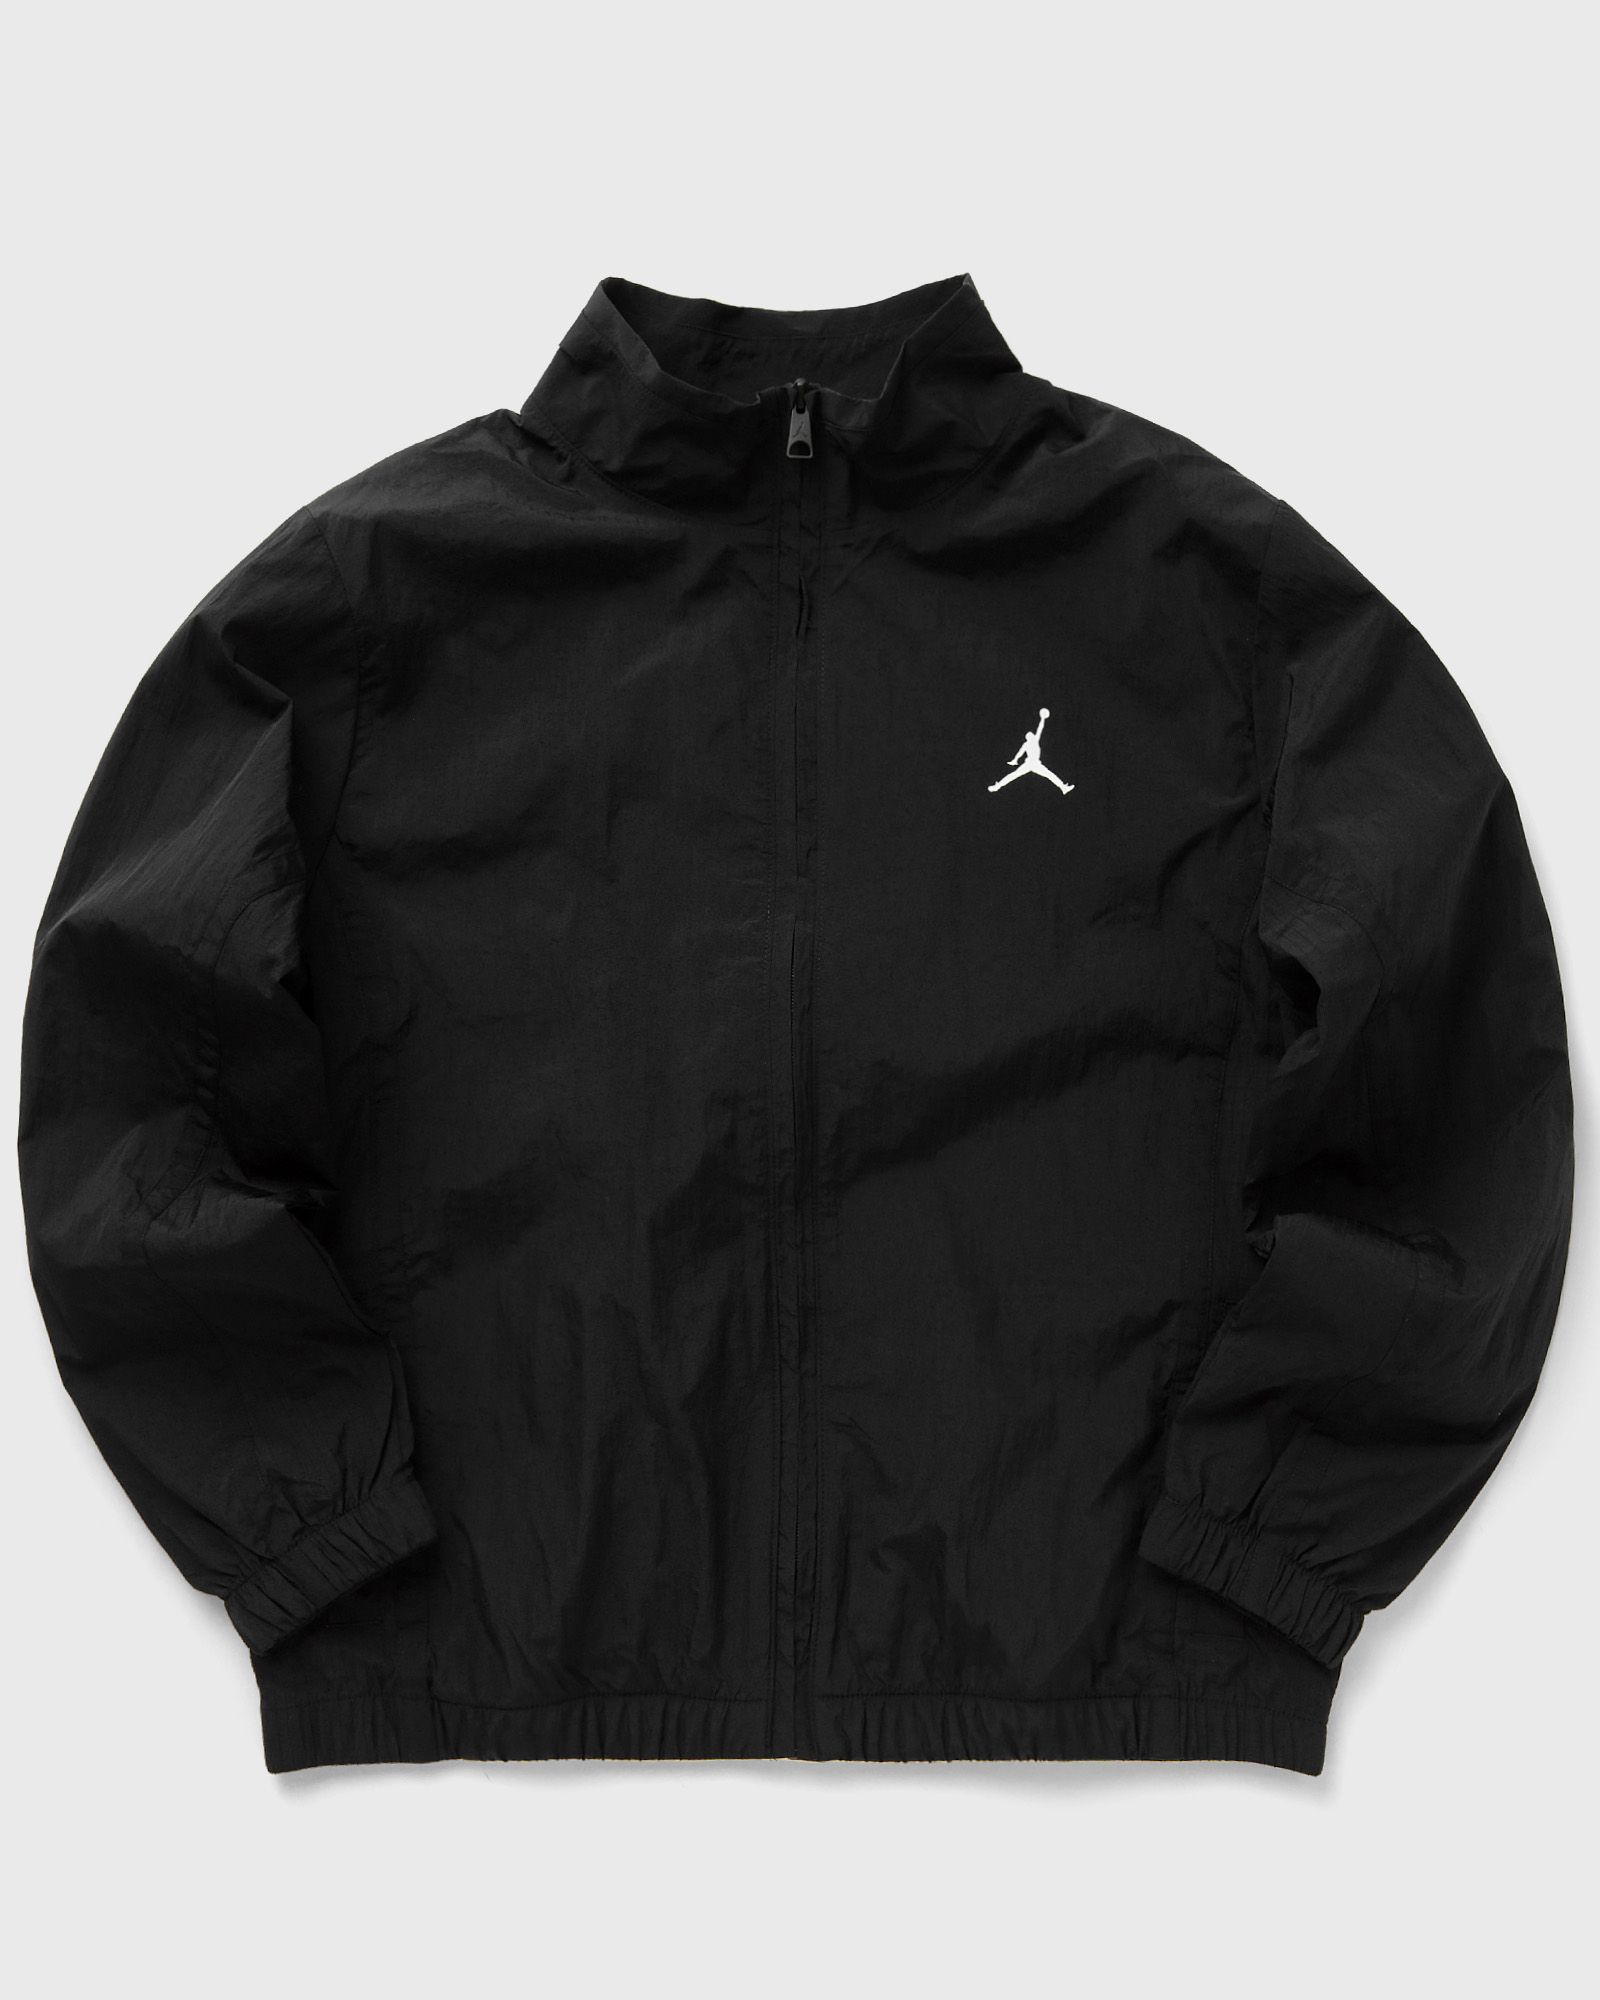 Jordan - essentials woven jacket men bomber jackets|windbreaker black in größe:xxl